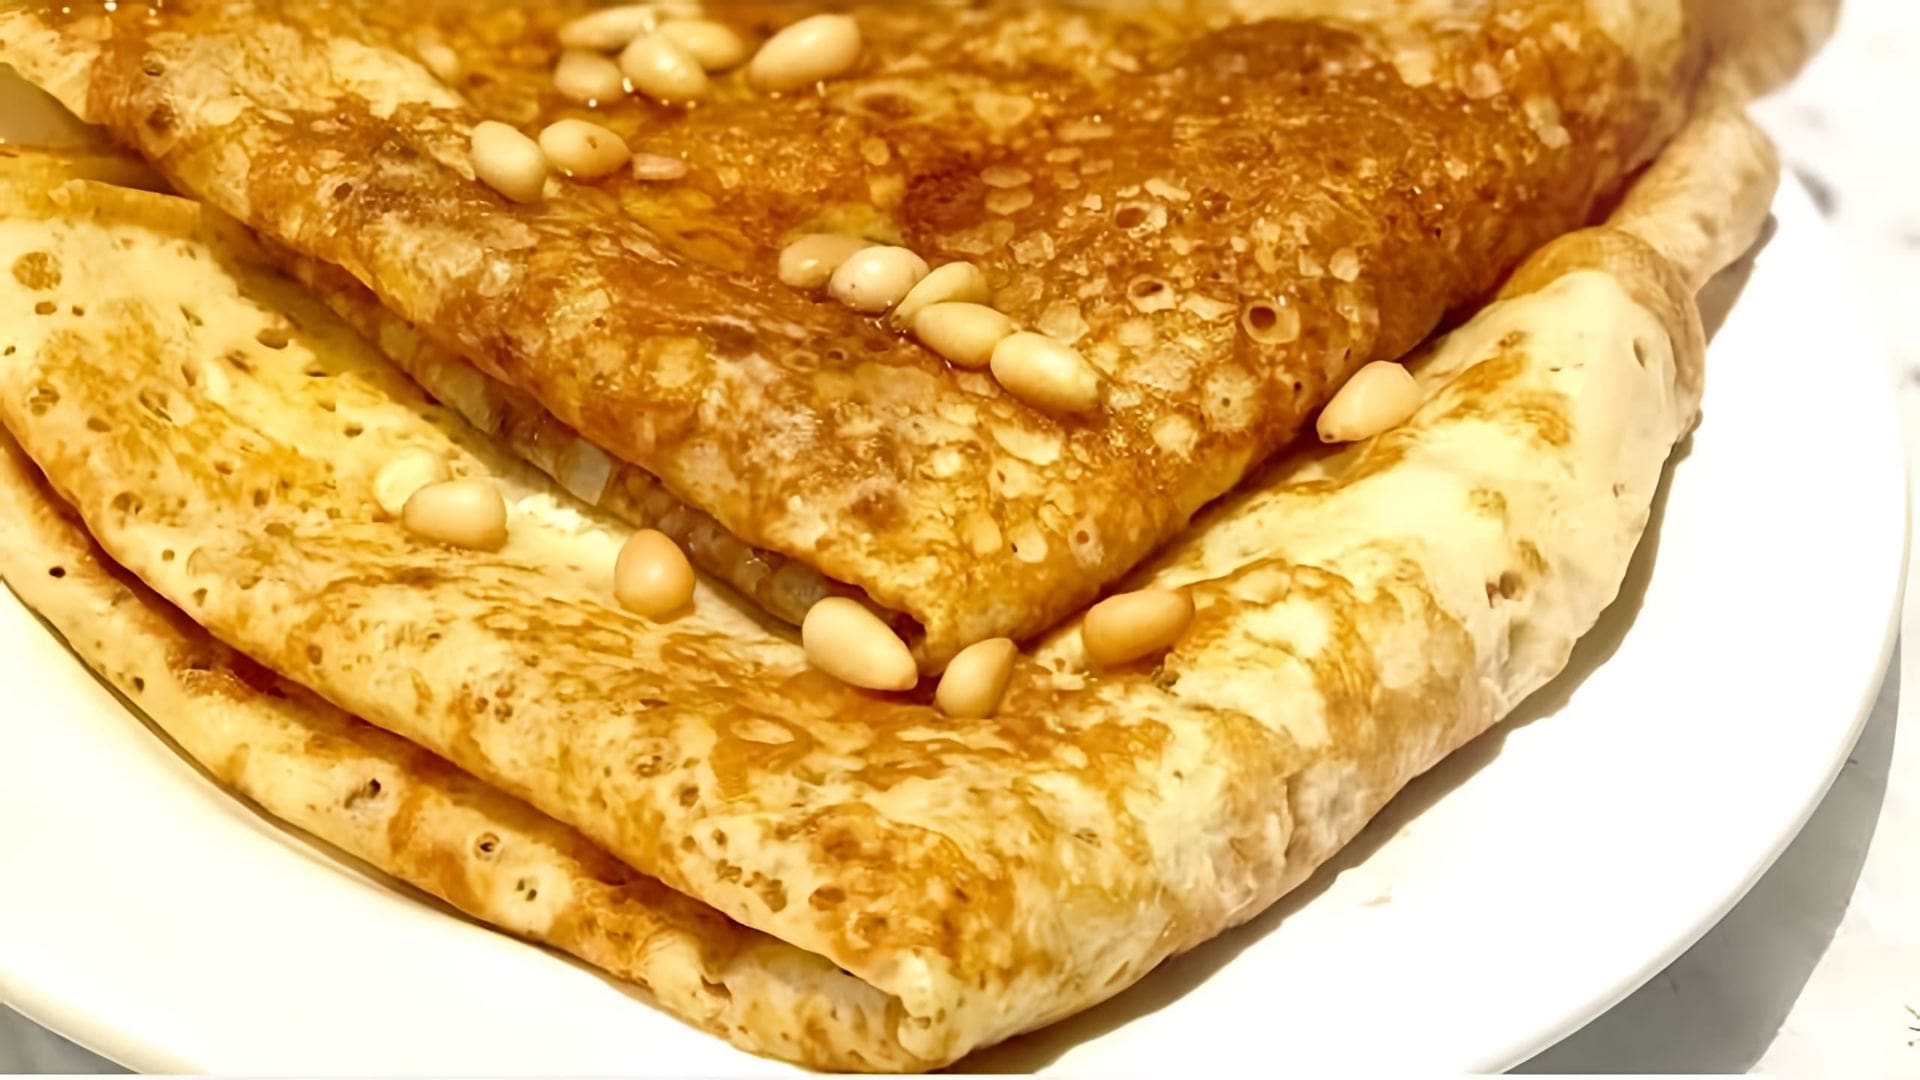 "Блины на завтрак по диете Дюкана" - это видео-ролик, который показывает, как приготовить вкусные и полезные блины, следуя принципам диеты Дюкана